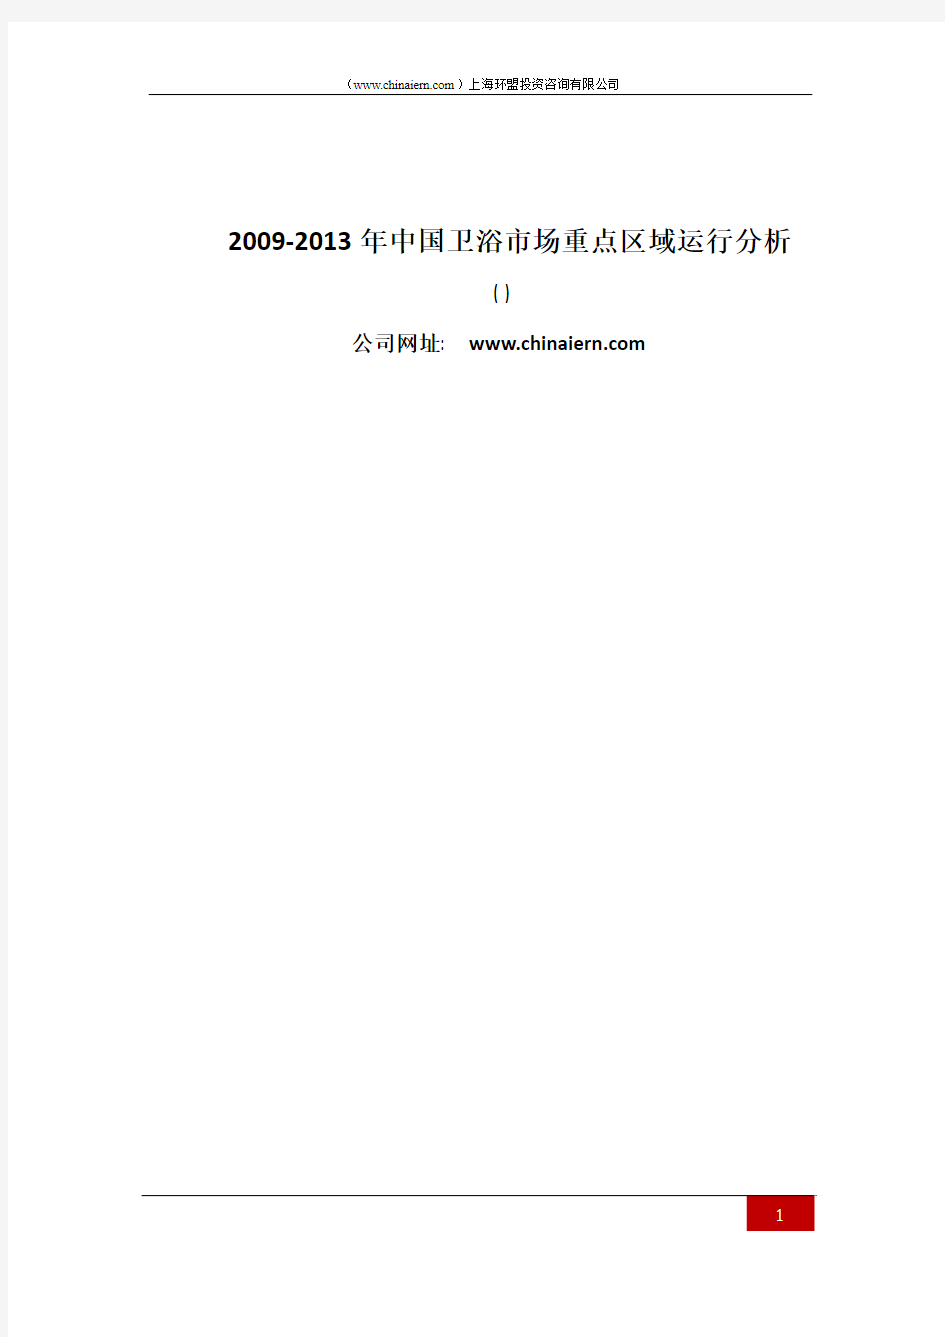 (上海环盟咨询)2009-2013年中国卫浴市场重点区域运行分析